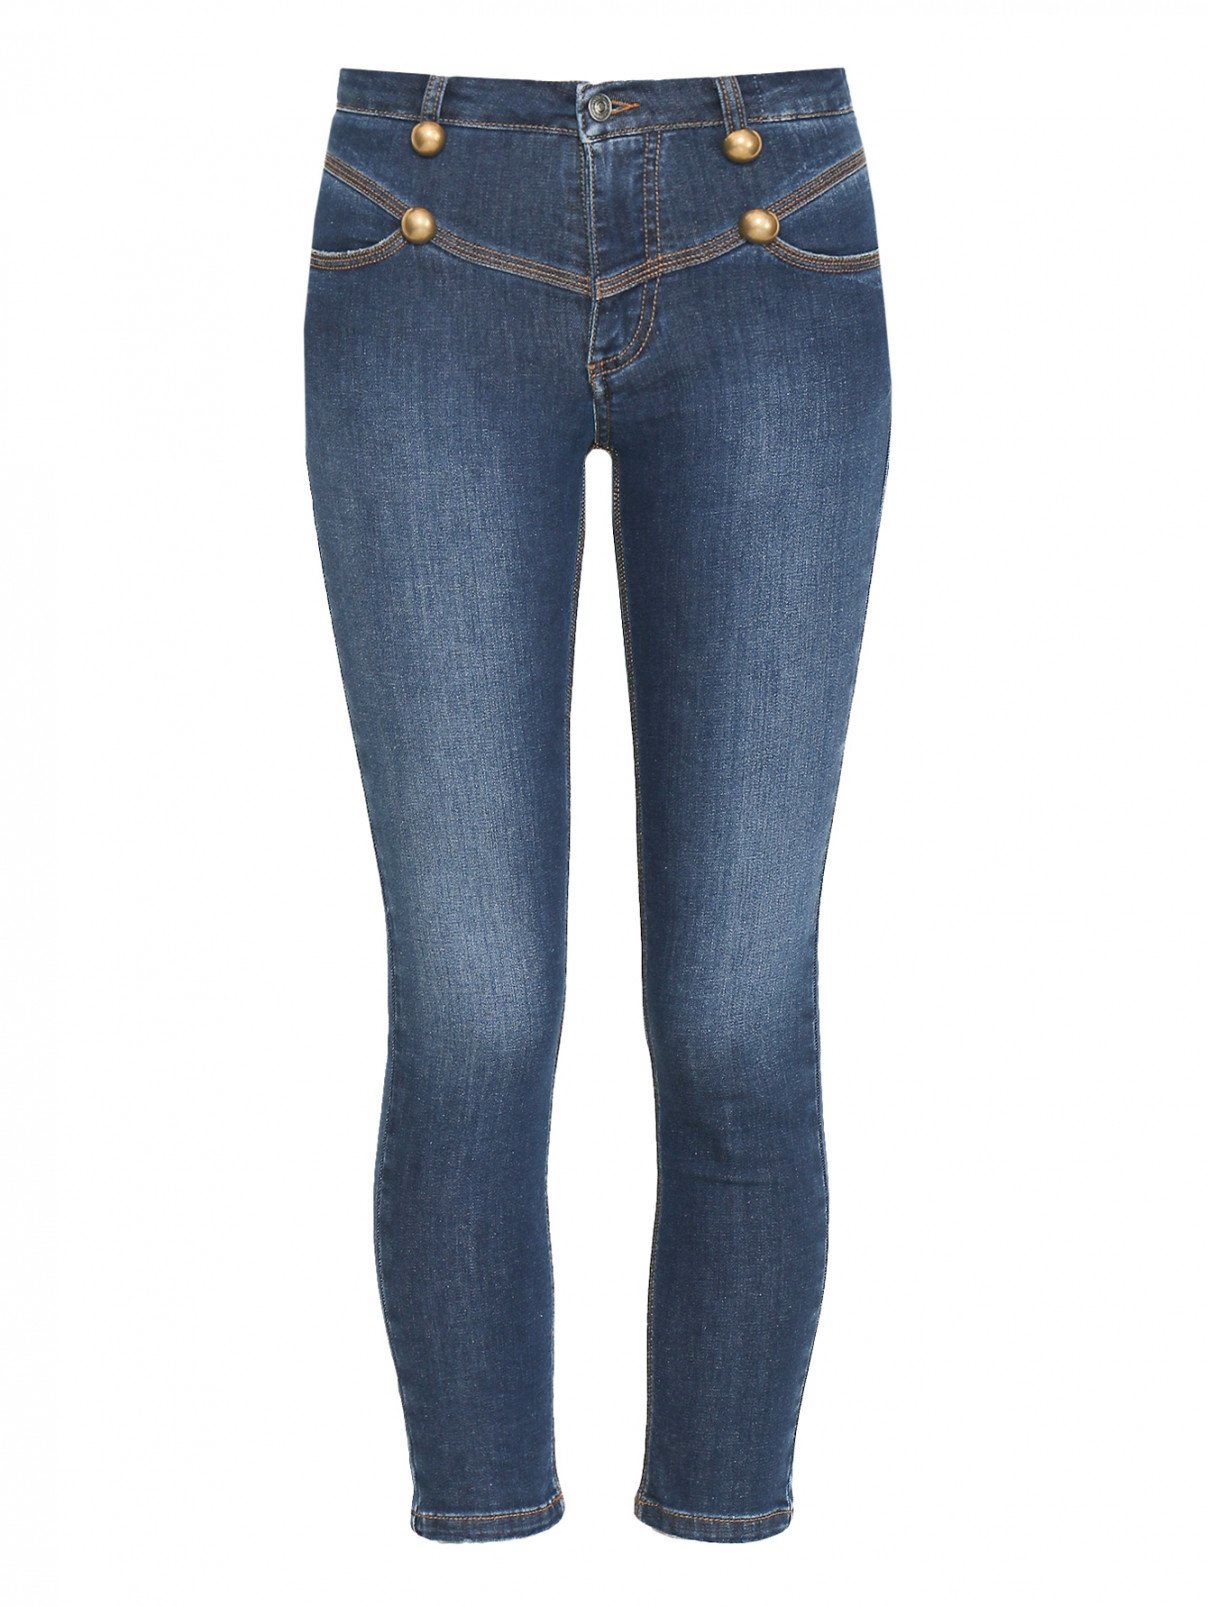 Укороченные джинсы с декоративными пуговицами Ermanno Scervino  –  Общий вид  – Цвет:  Синий